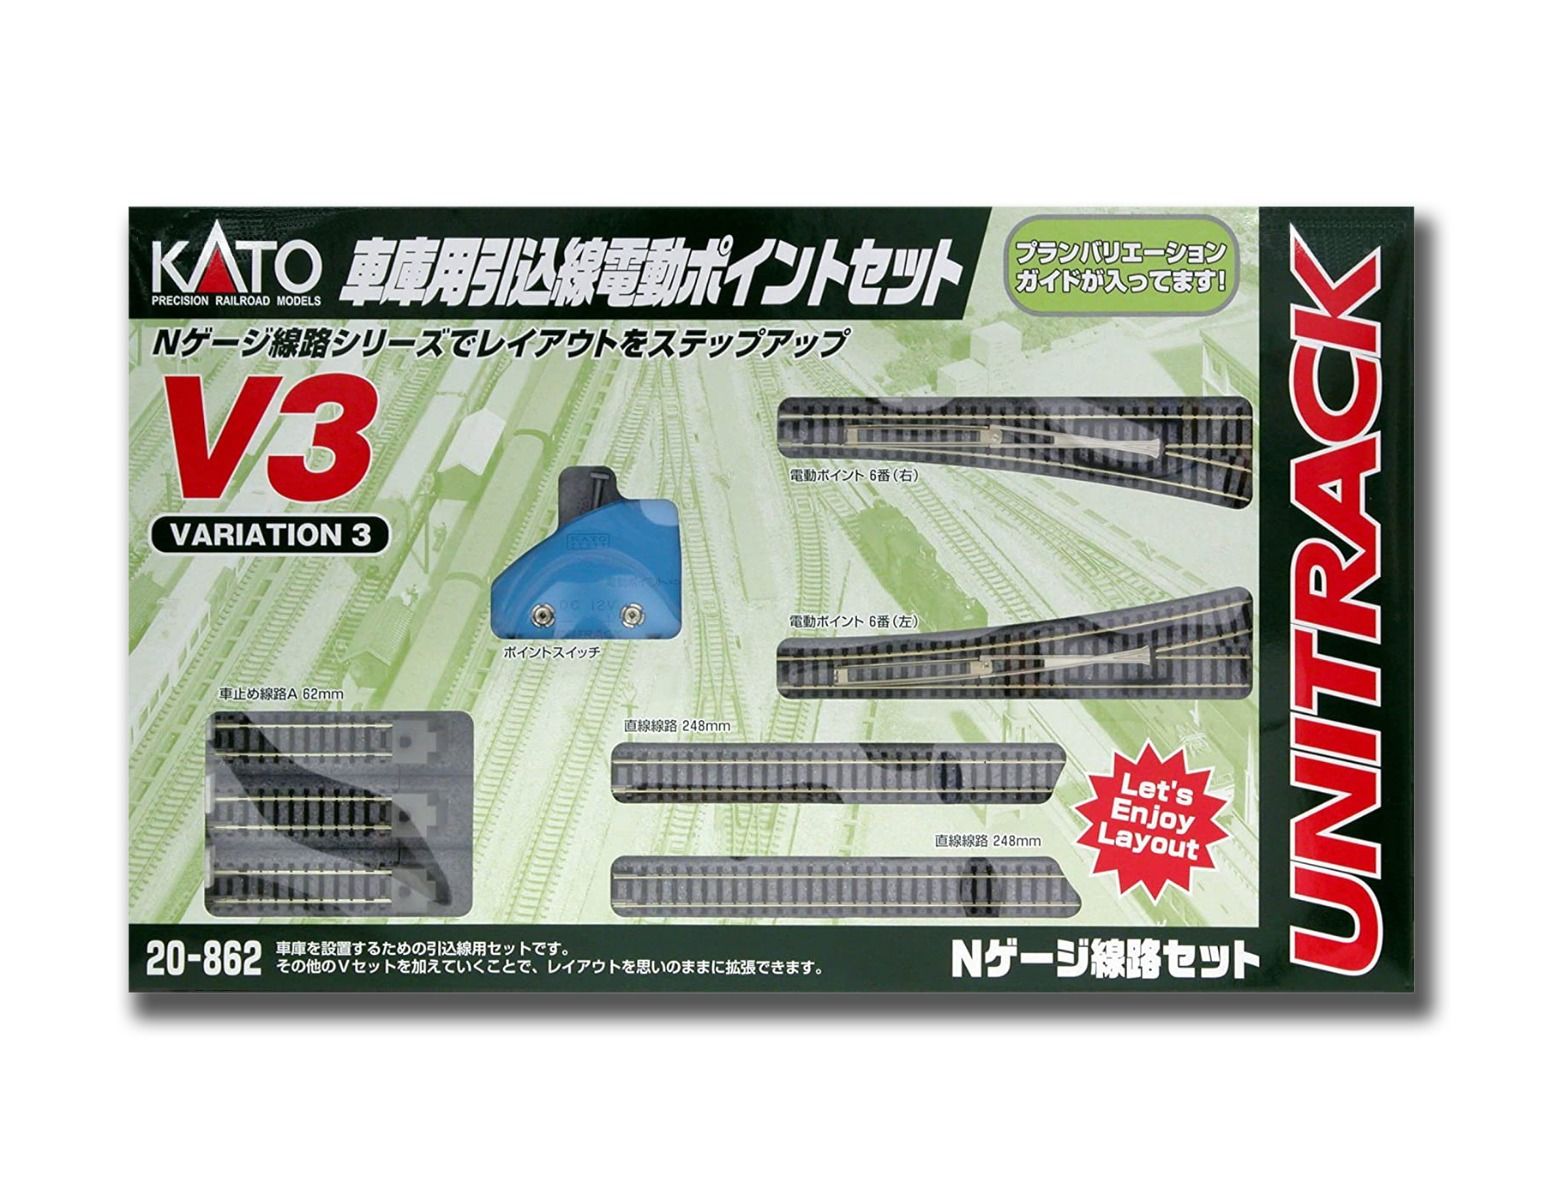 KATO Concrete Slab Double Track Set V17 20-877 N Gauge N248 for sale online 